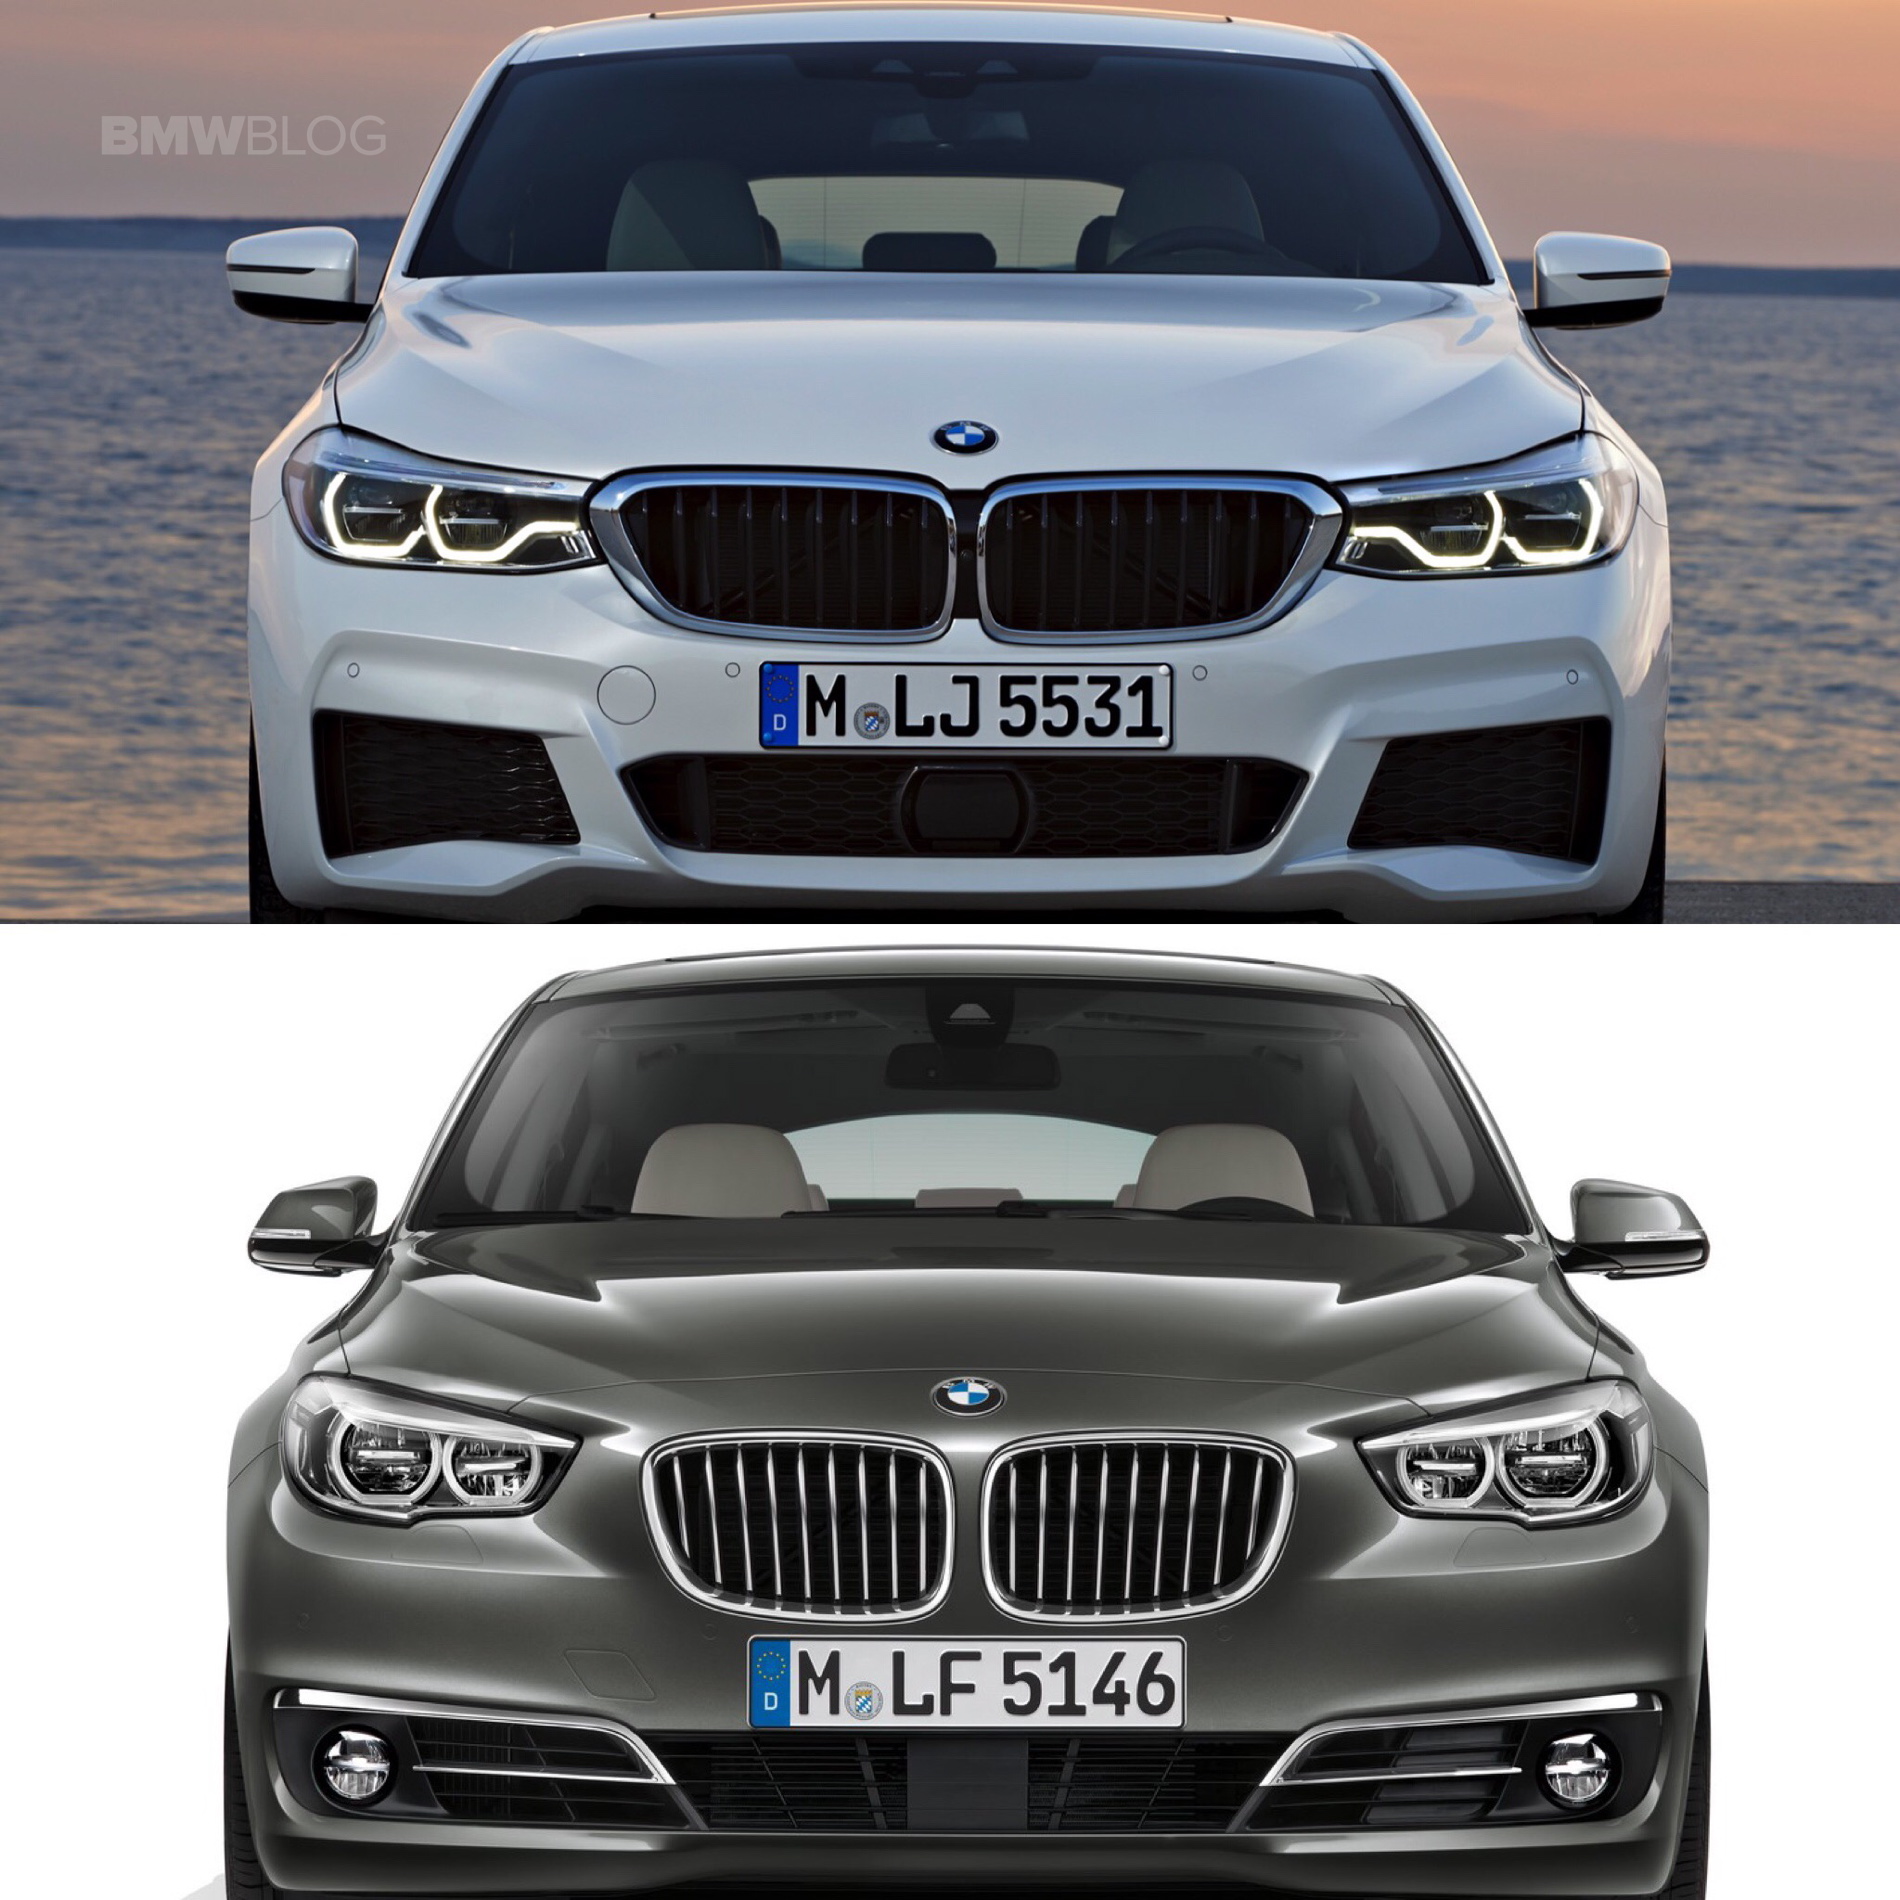 BMW 6 Series GT versus 5 Series GT 01